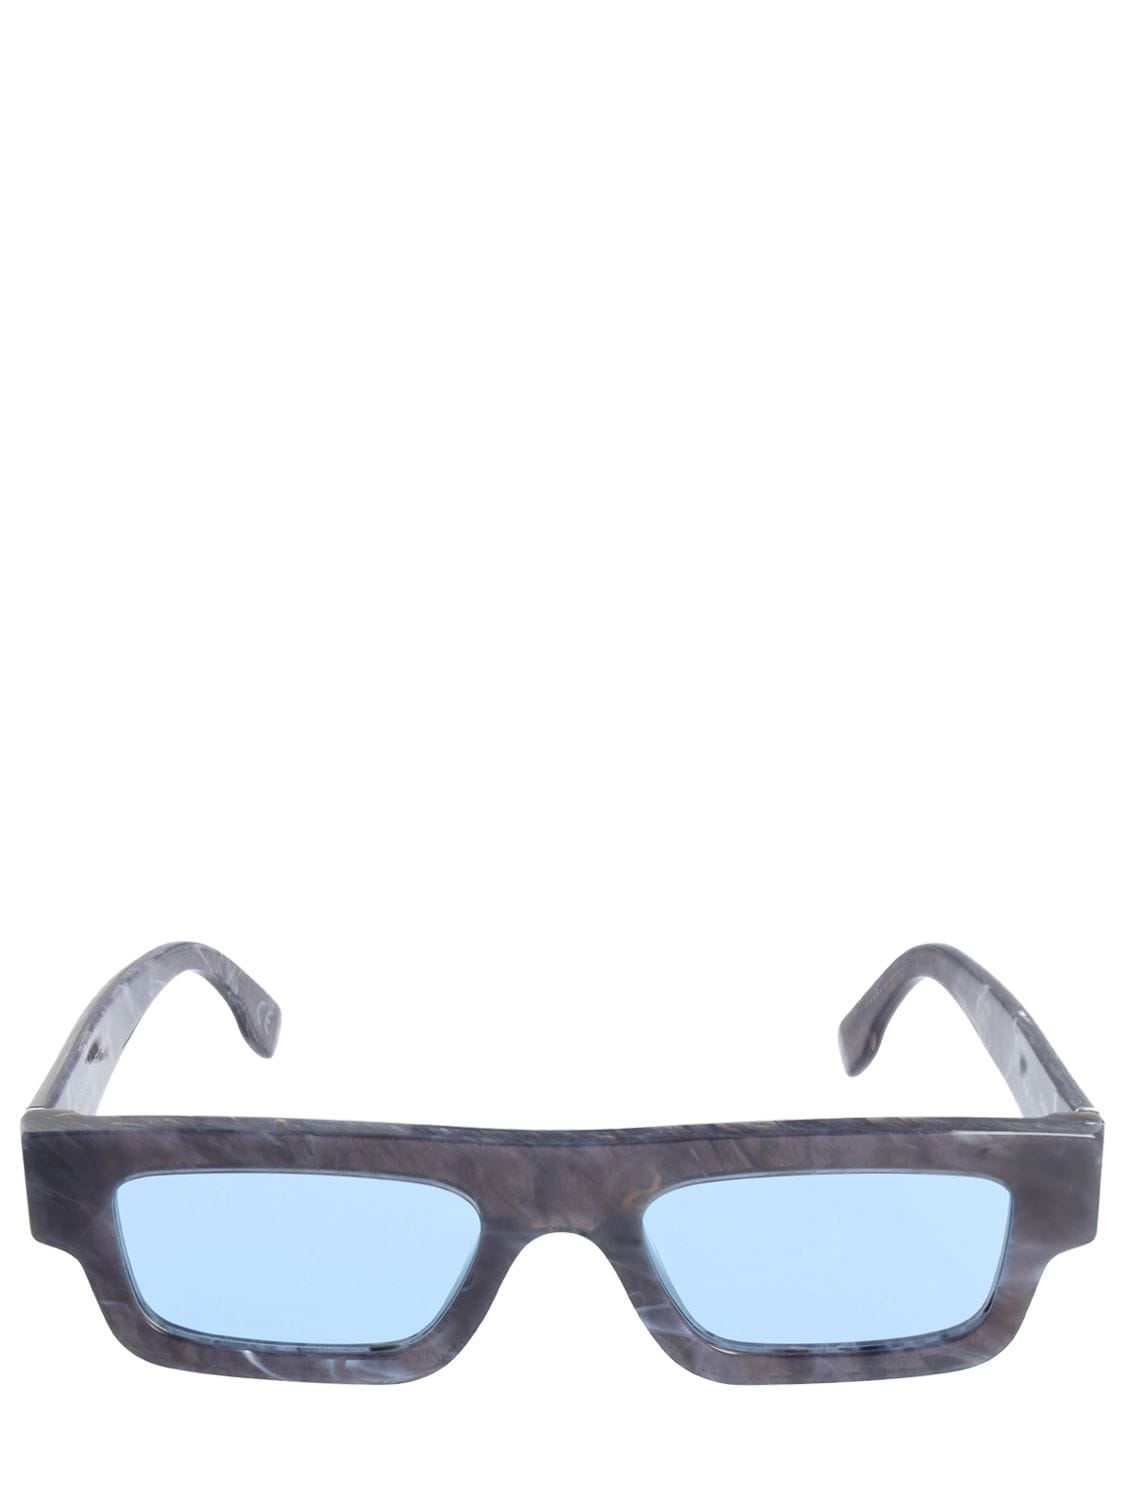 Colpo Squared Black Marble Sunglasses